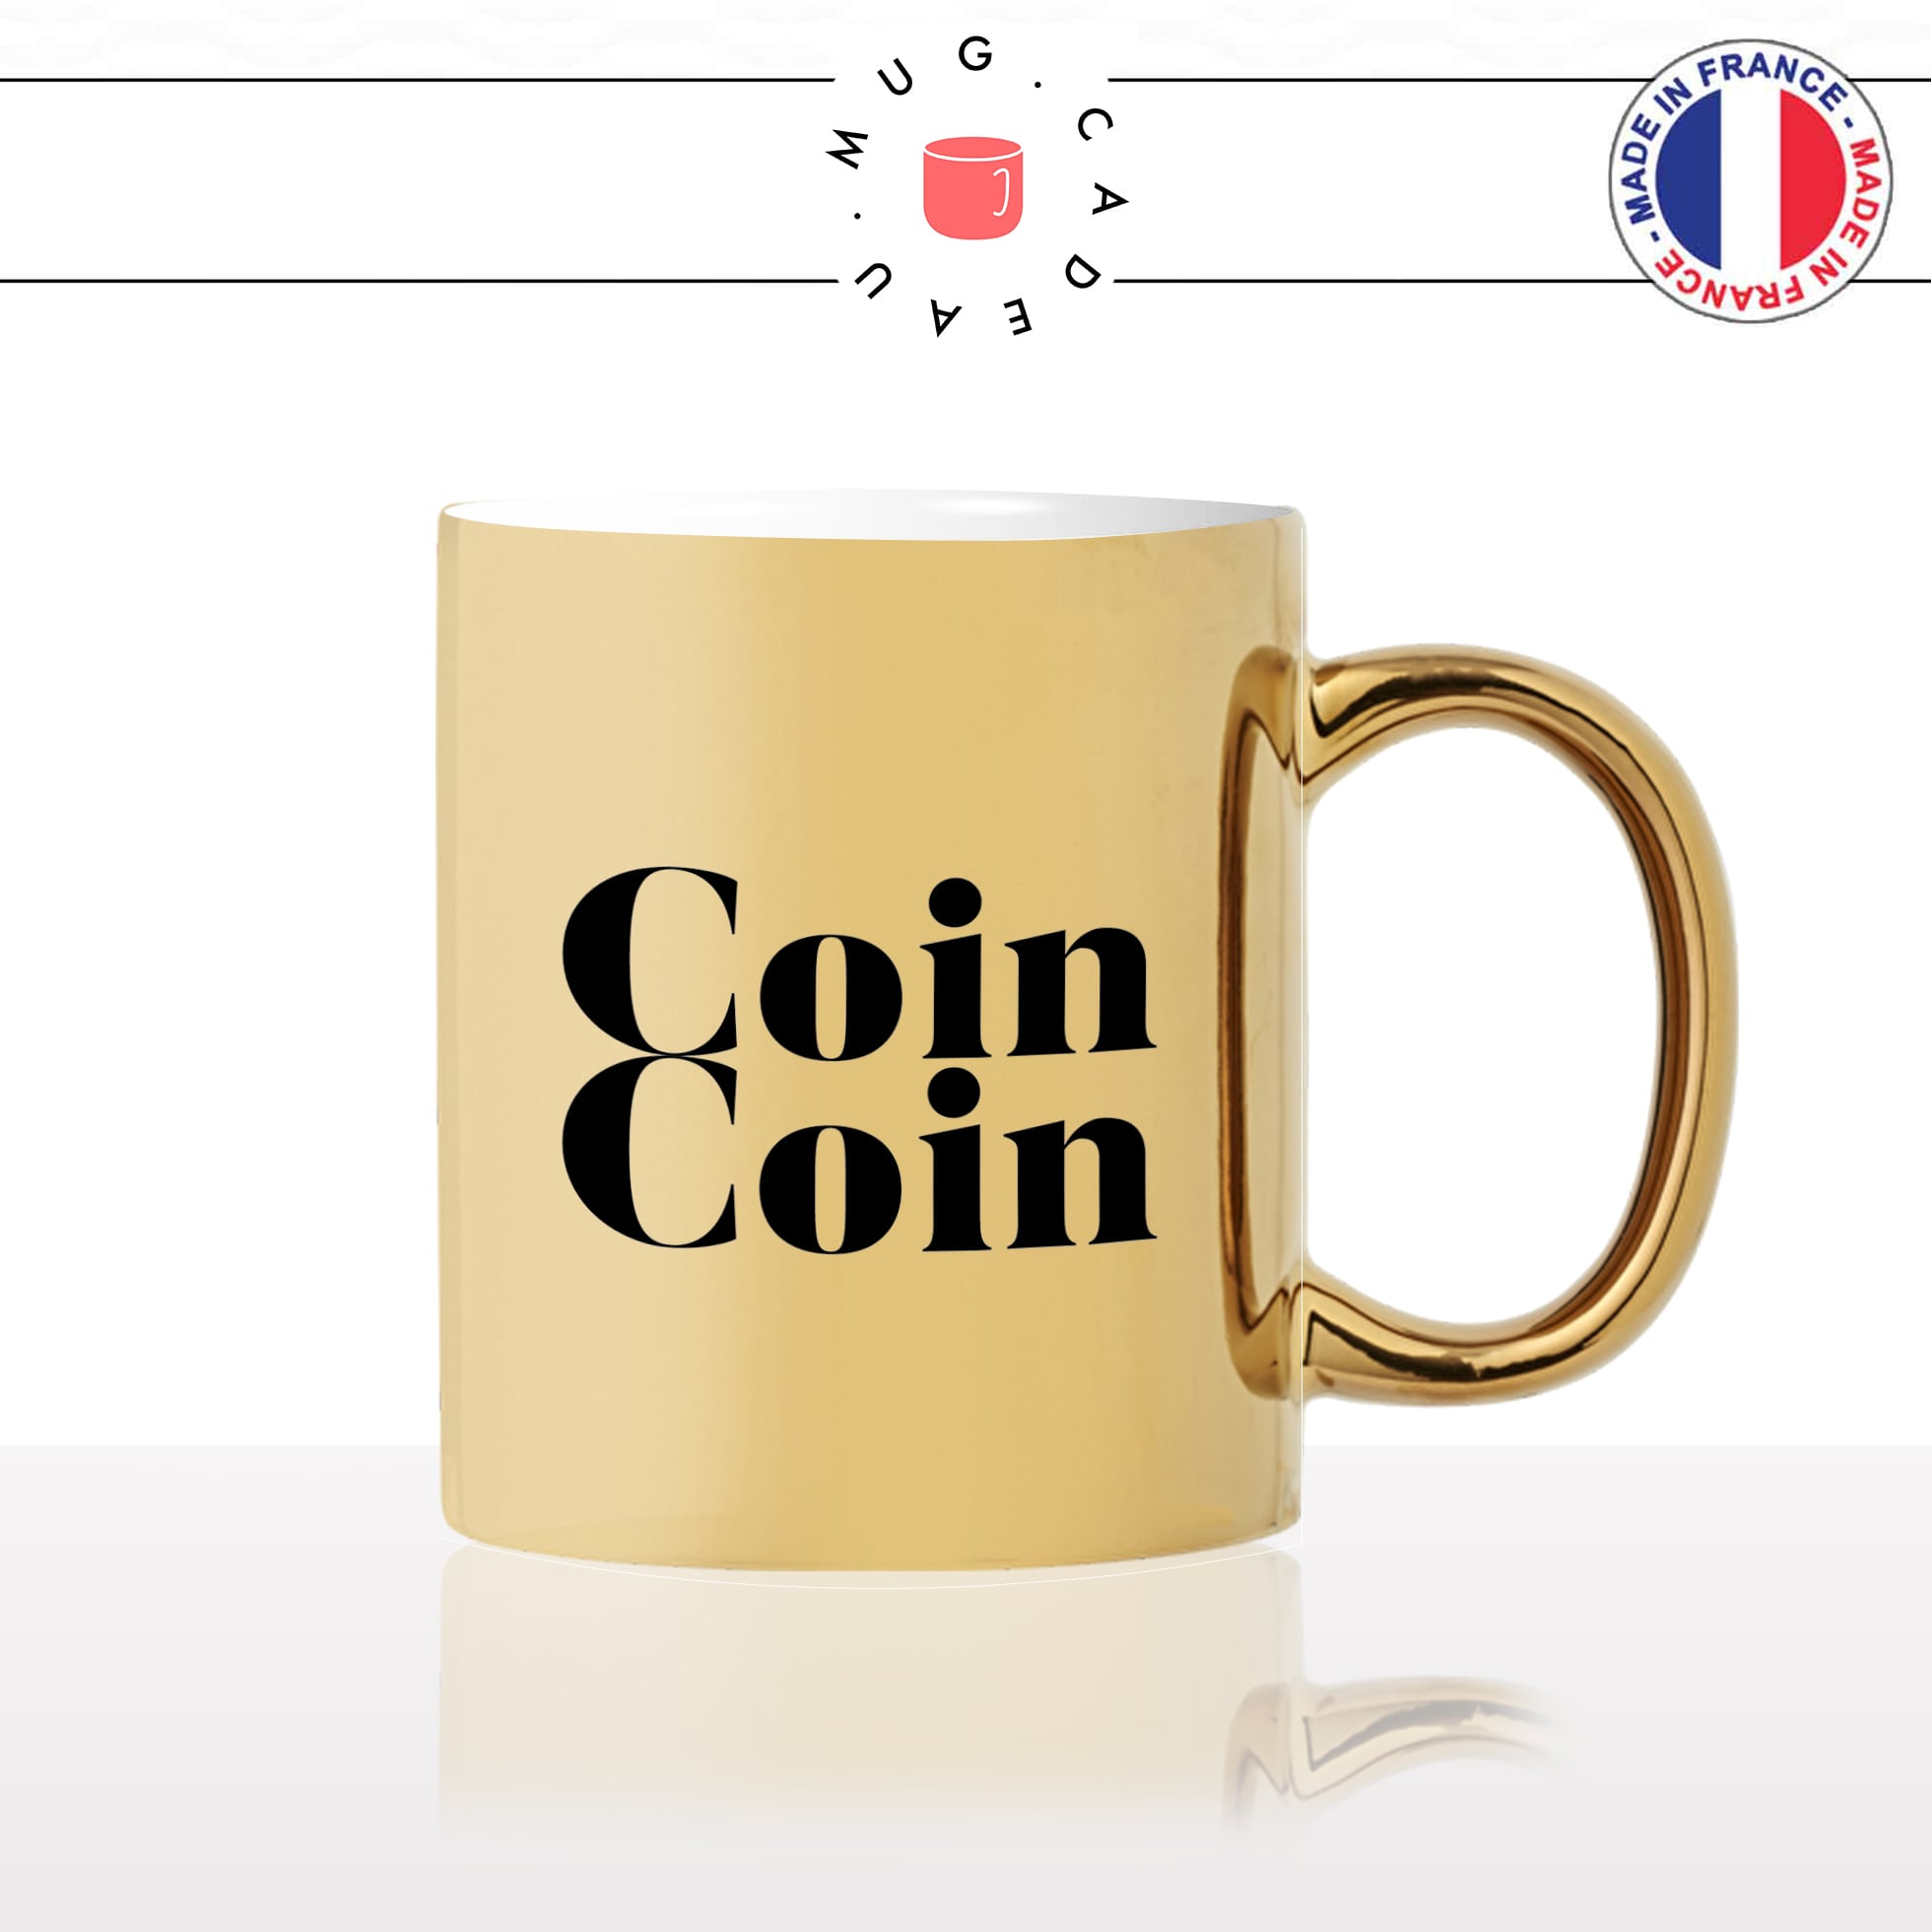 mug-tasse-doré-or-gold-canard-calligraphie-lettrine-mot-coin-coin-homme-couple-décoration-ami-idée-cadeau-original-personnalisé-café-thé2-min